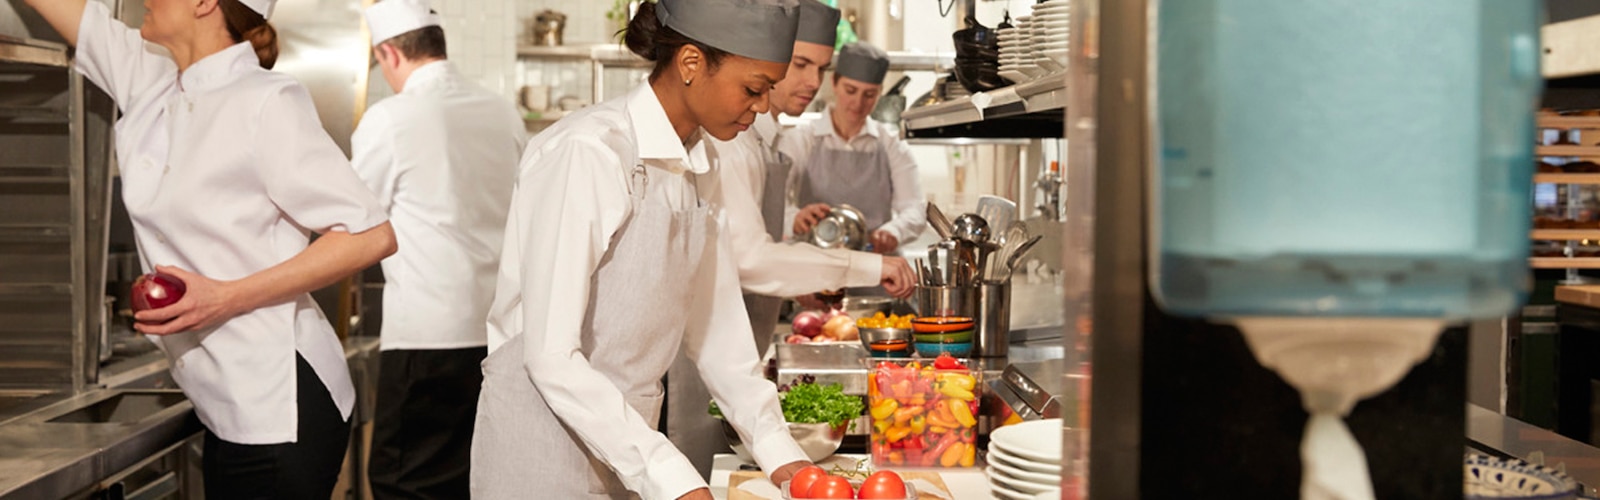 Kvinner og menn som tilbereder måltider i et restaurantkjøkken